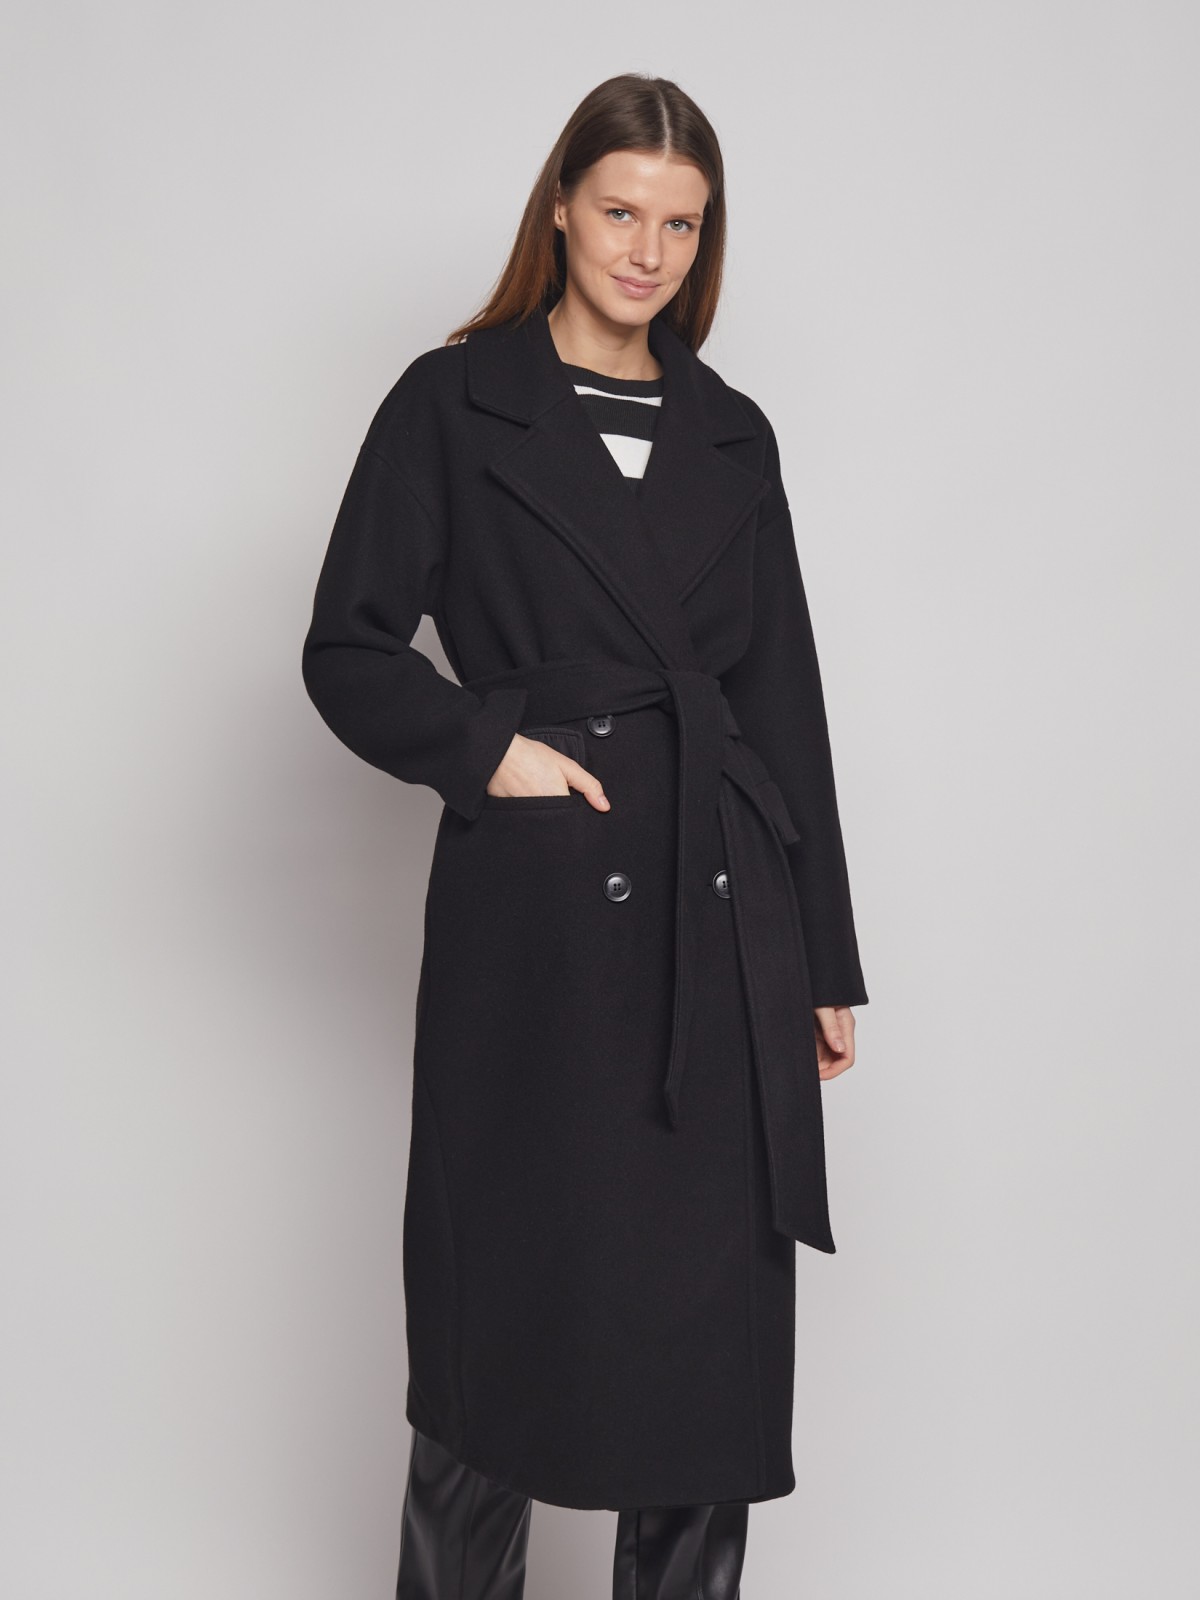 Двубортное пальто с поясом zolla 023125857054, цвет черный, размер XS - фото 1